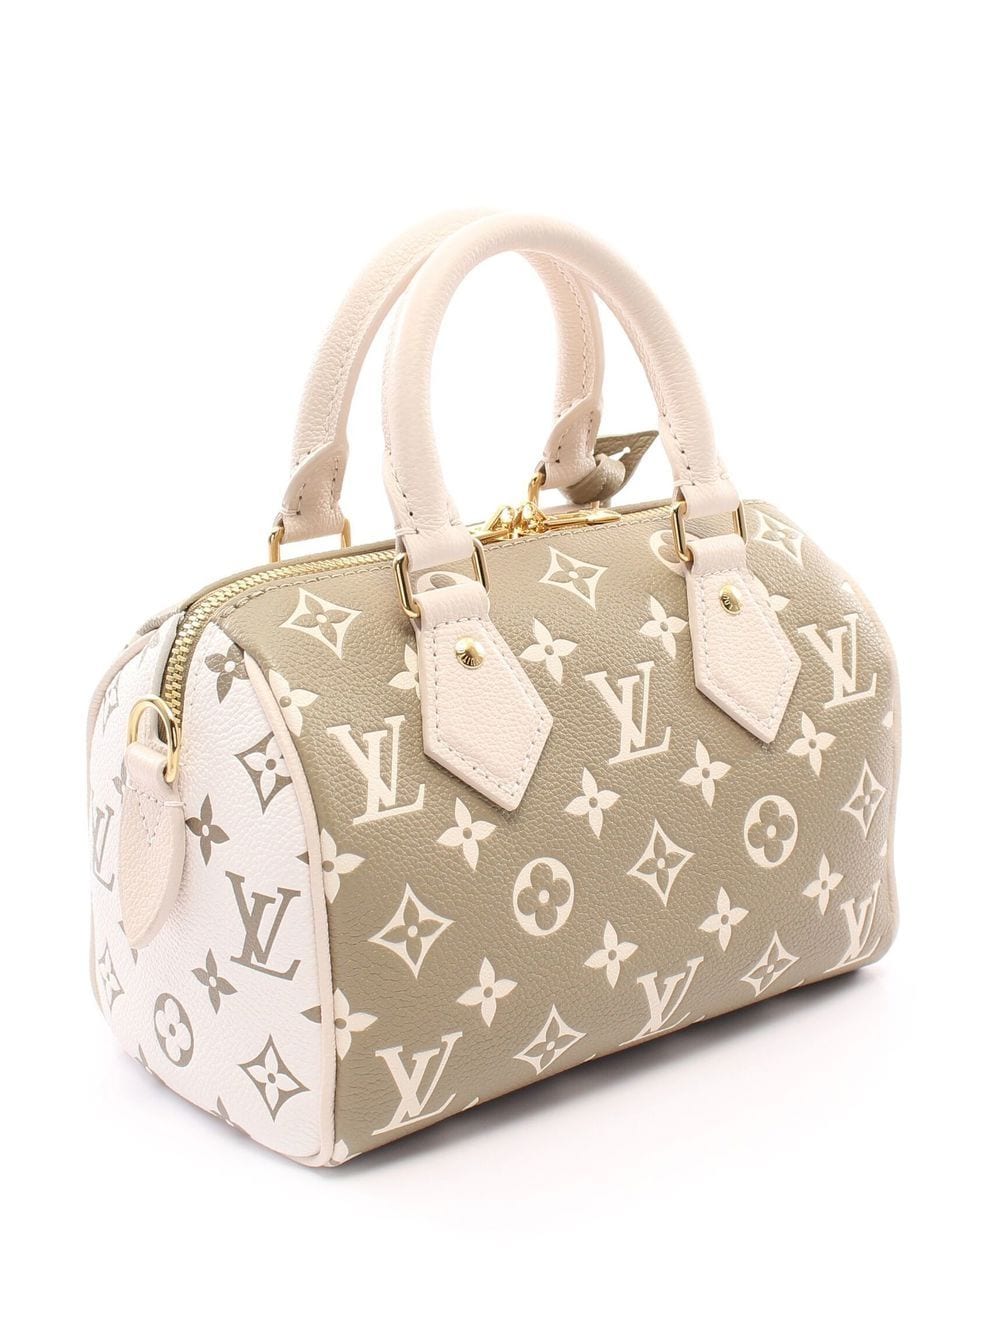 Louis Vuitton Speedy Bandouliere 25 2-way Handbag - Farfetch